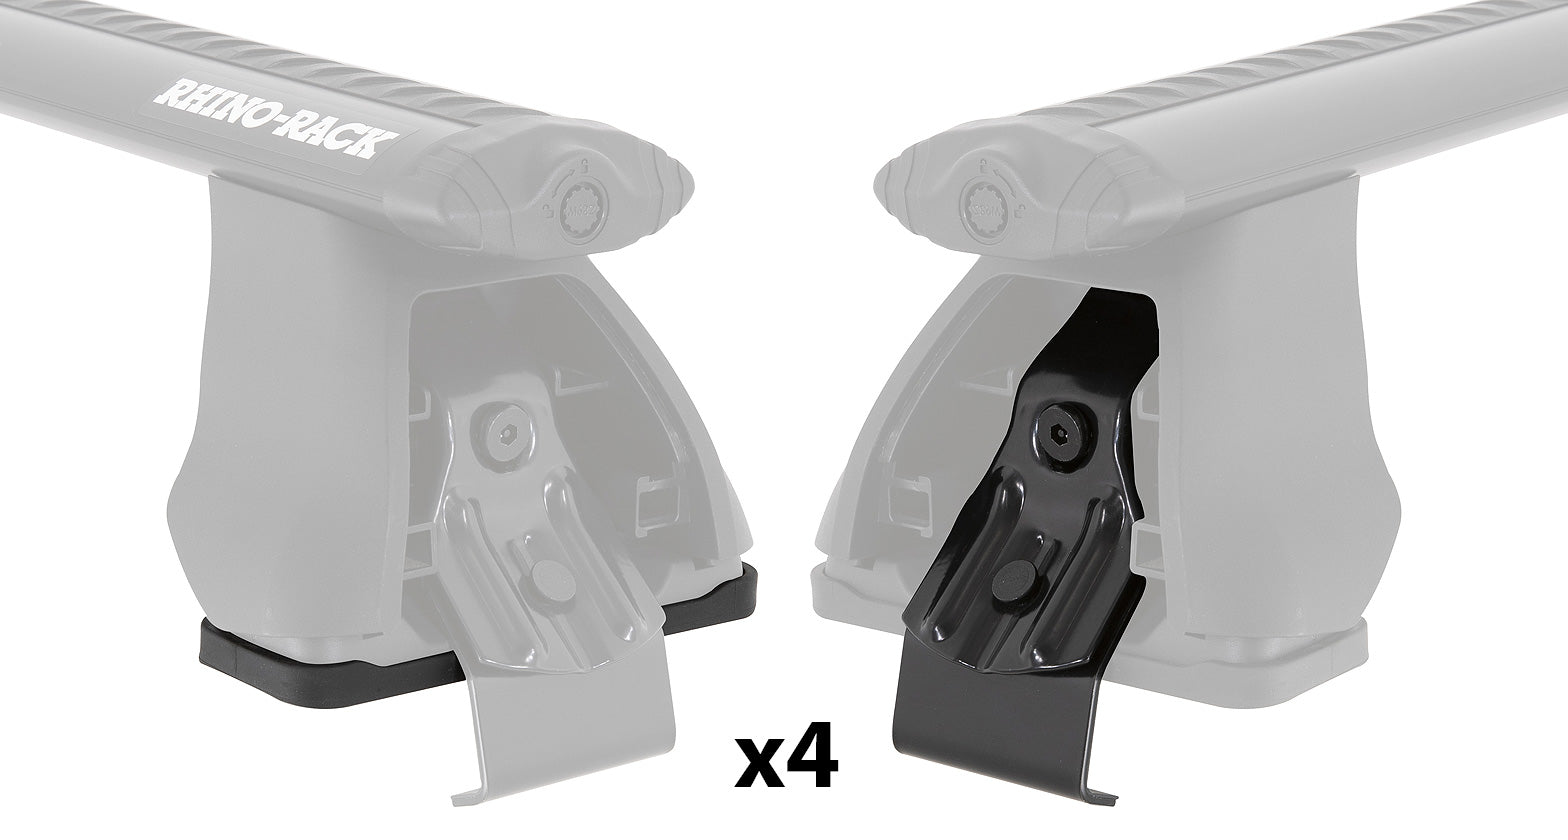 PAD & CLAMP KIT FOR RHINO 2500 MULTI FIT - DK115